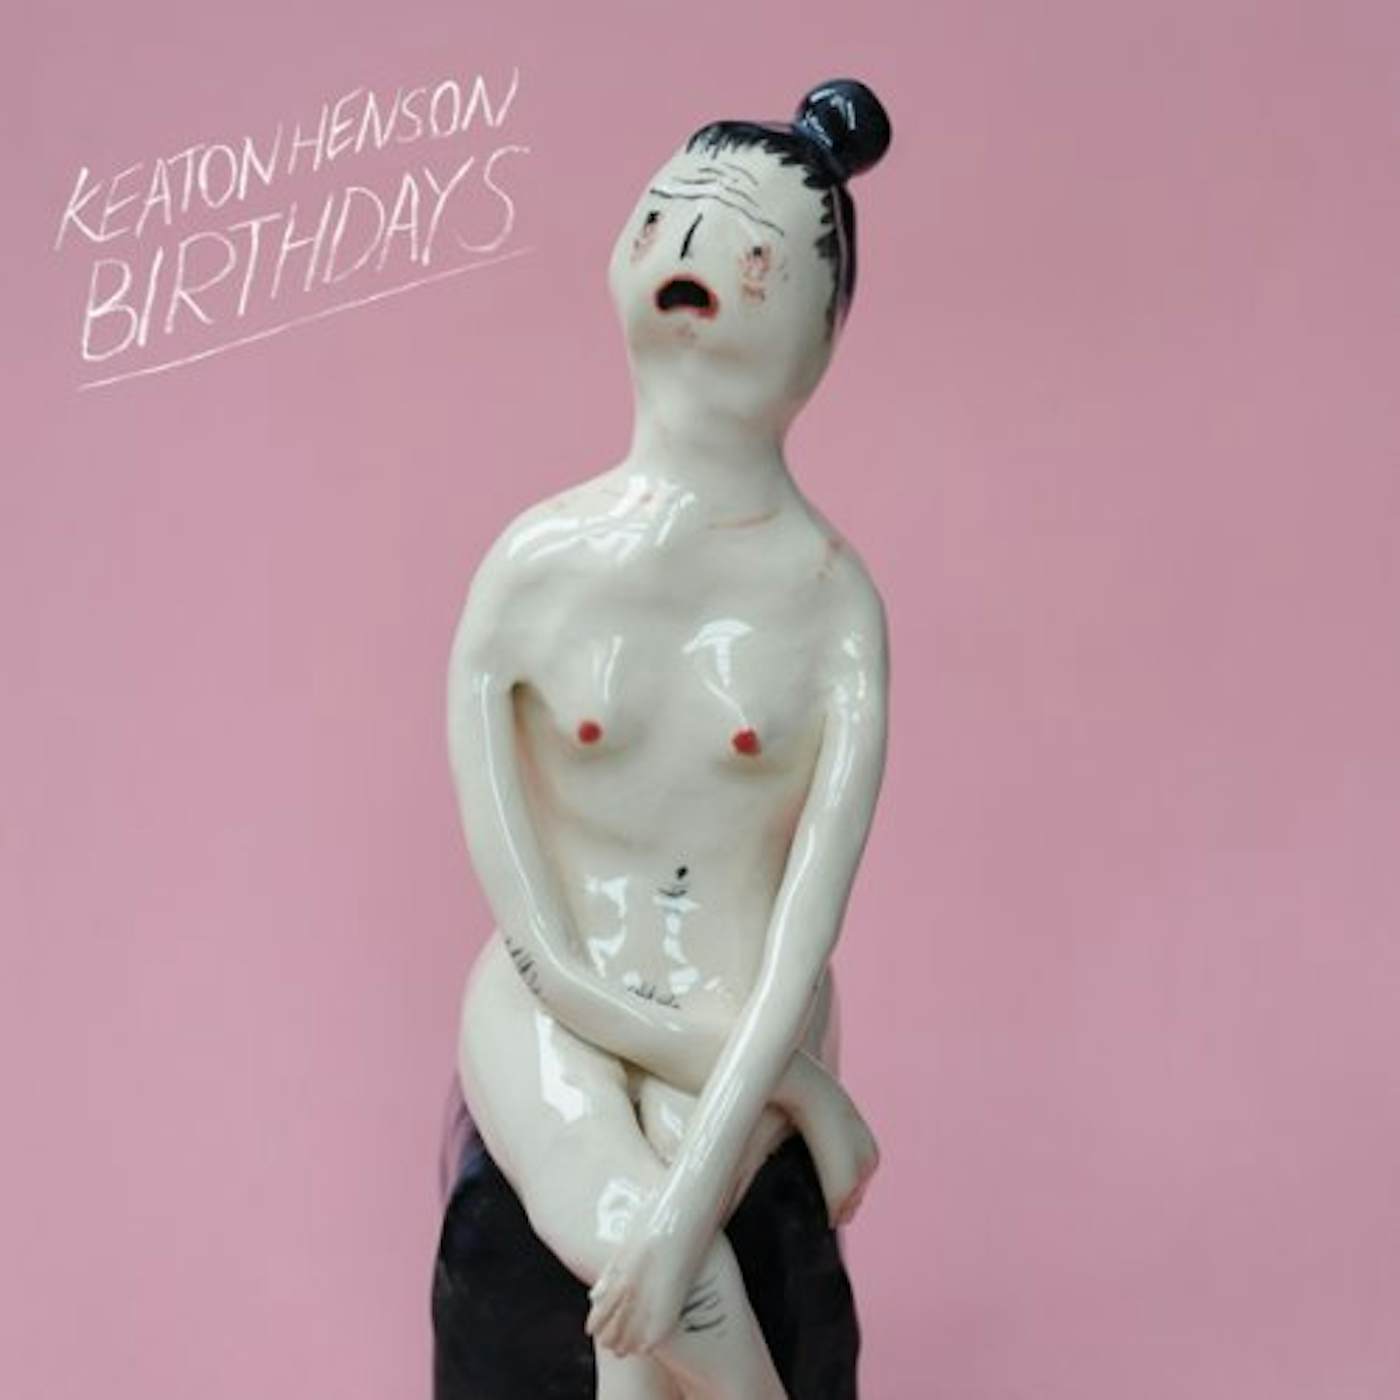 Keaton Henson BIRTHDAYS CD